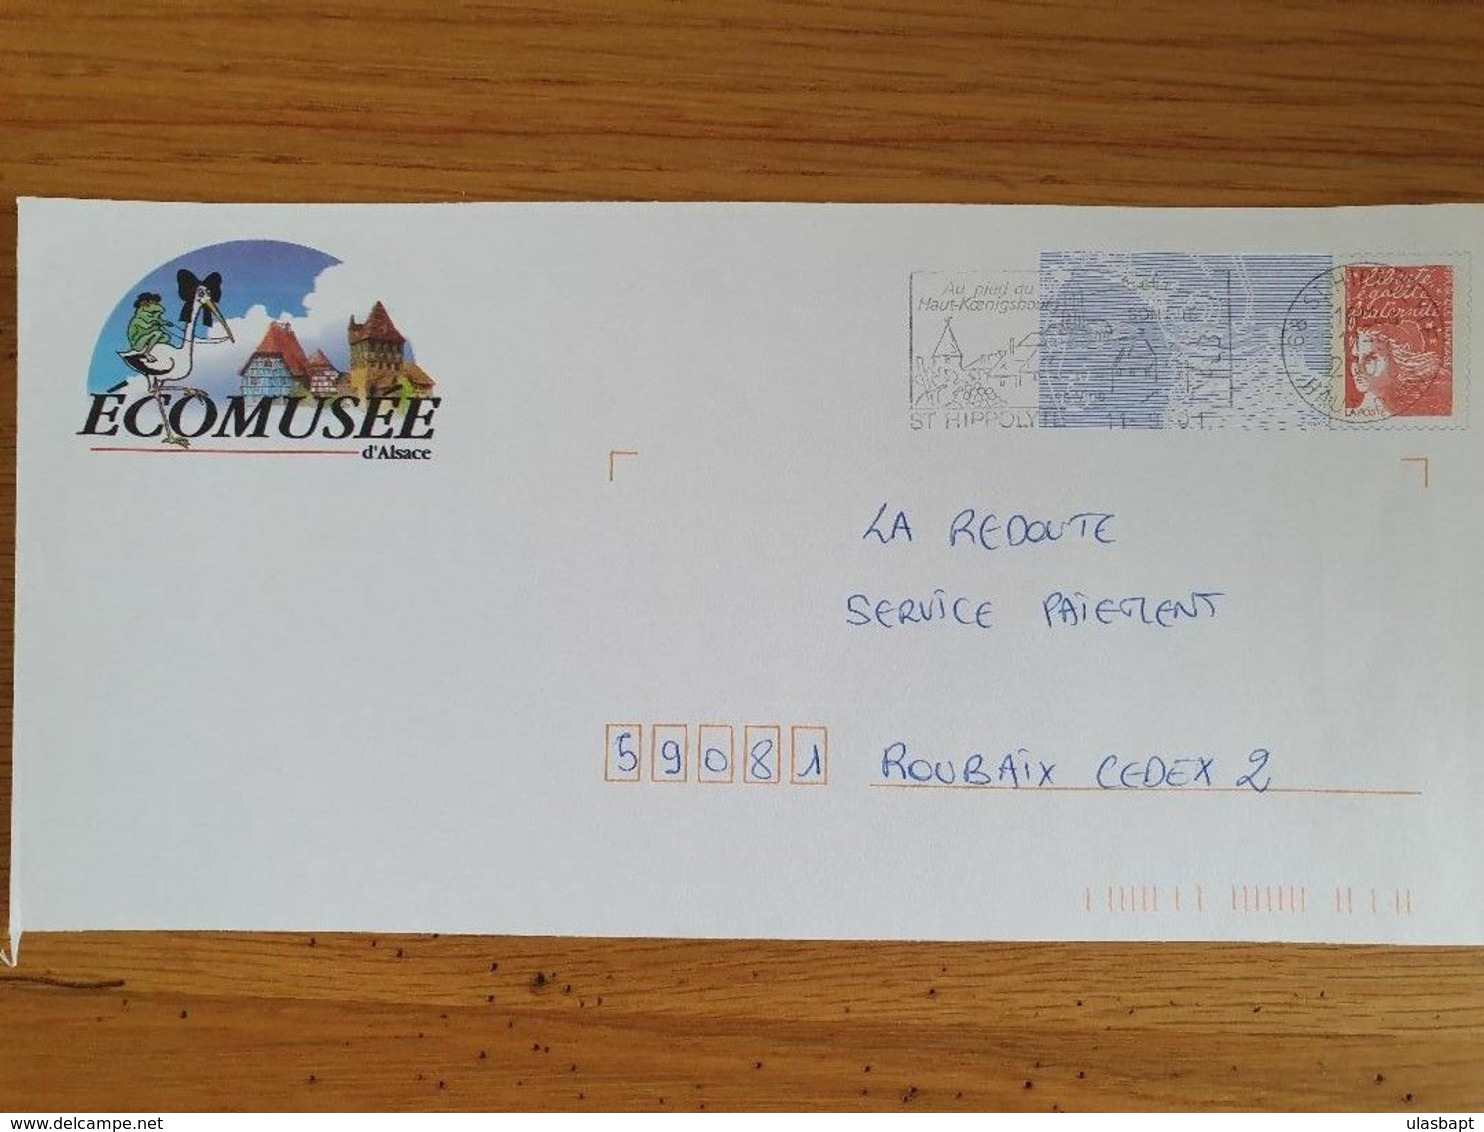 Entier Postal PAP Repiqué Ecomusée D'Alsace Saint Hyppolite 11 Septembre 2001 Cigogne Grenouille Colombage Koenigsbourg - Prêts-à-poster: Repiquages Privés